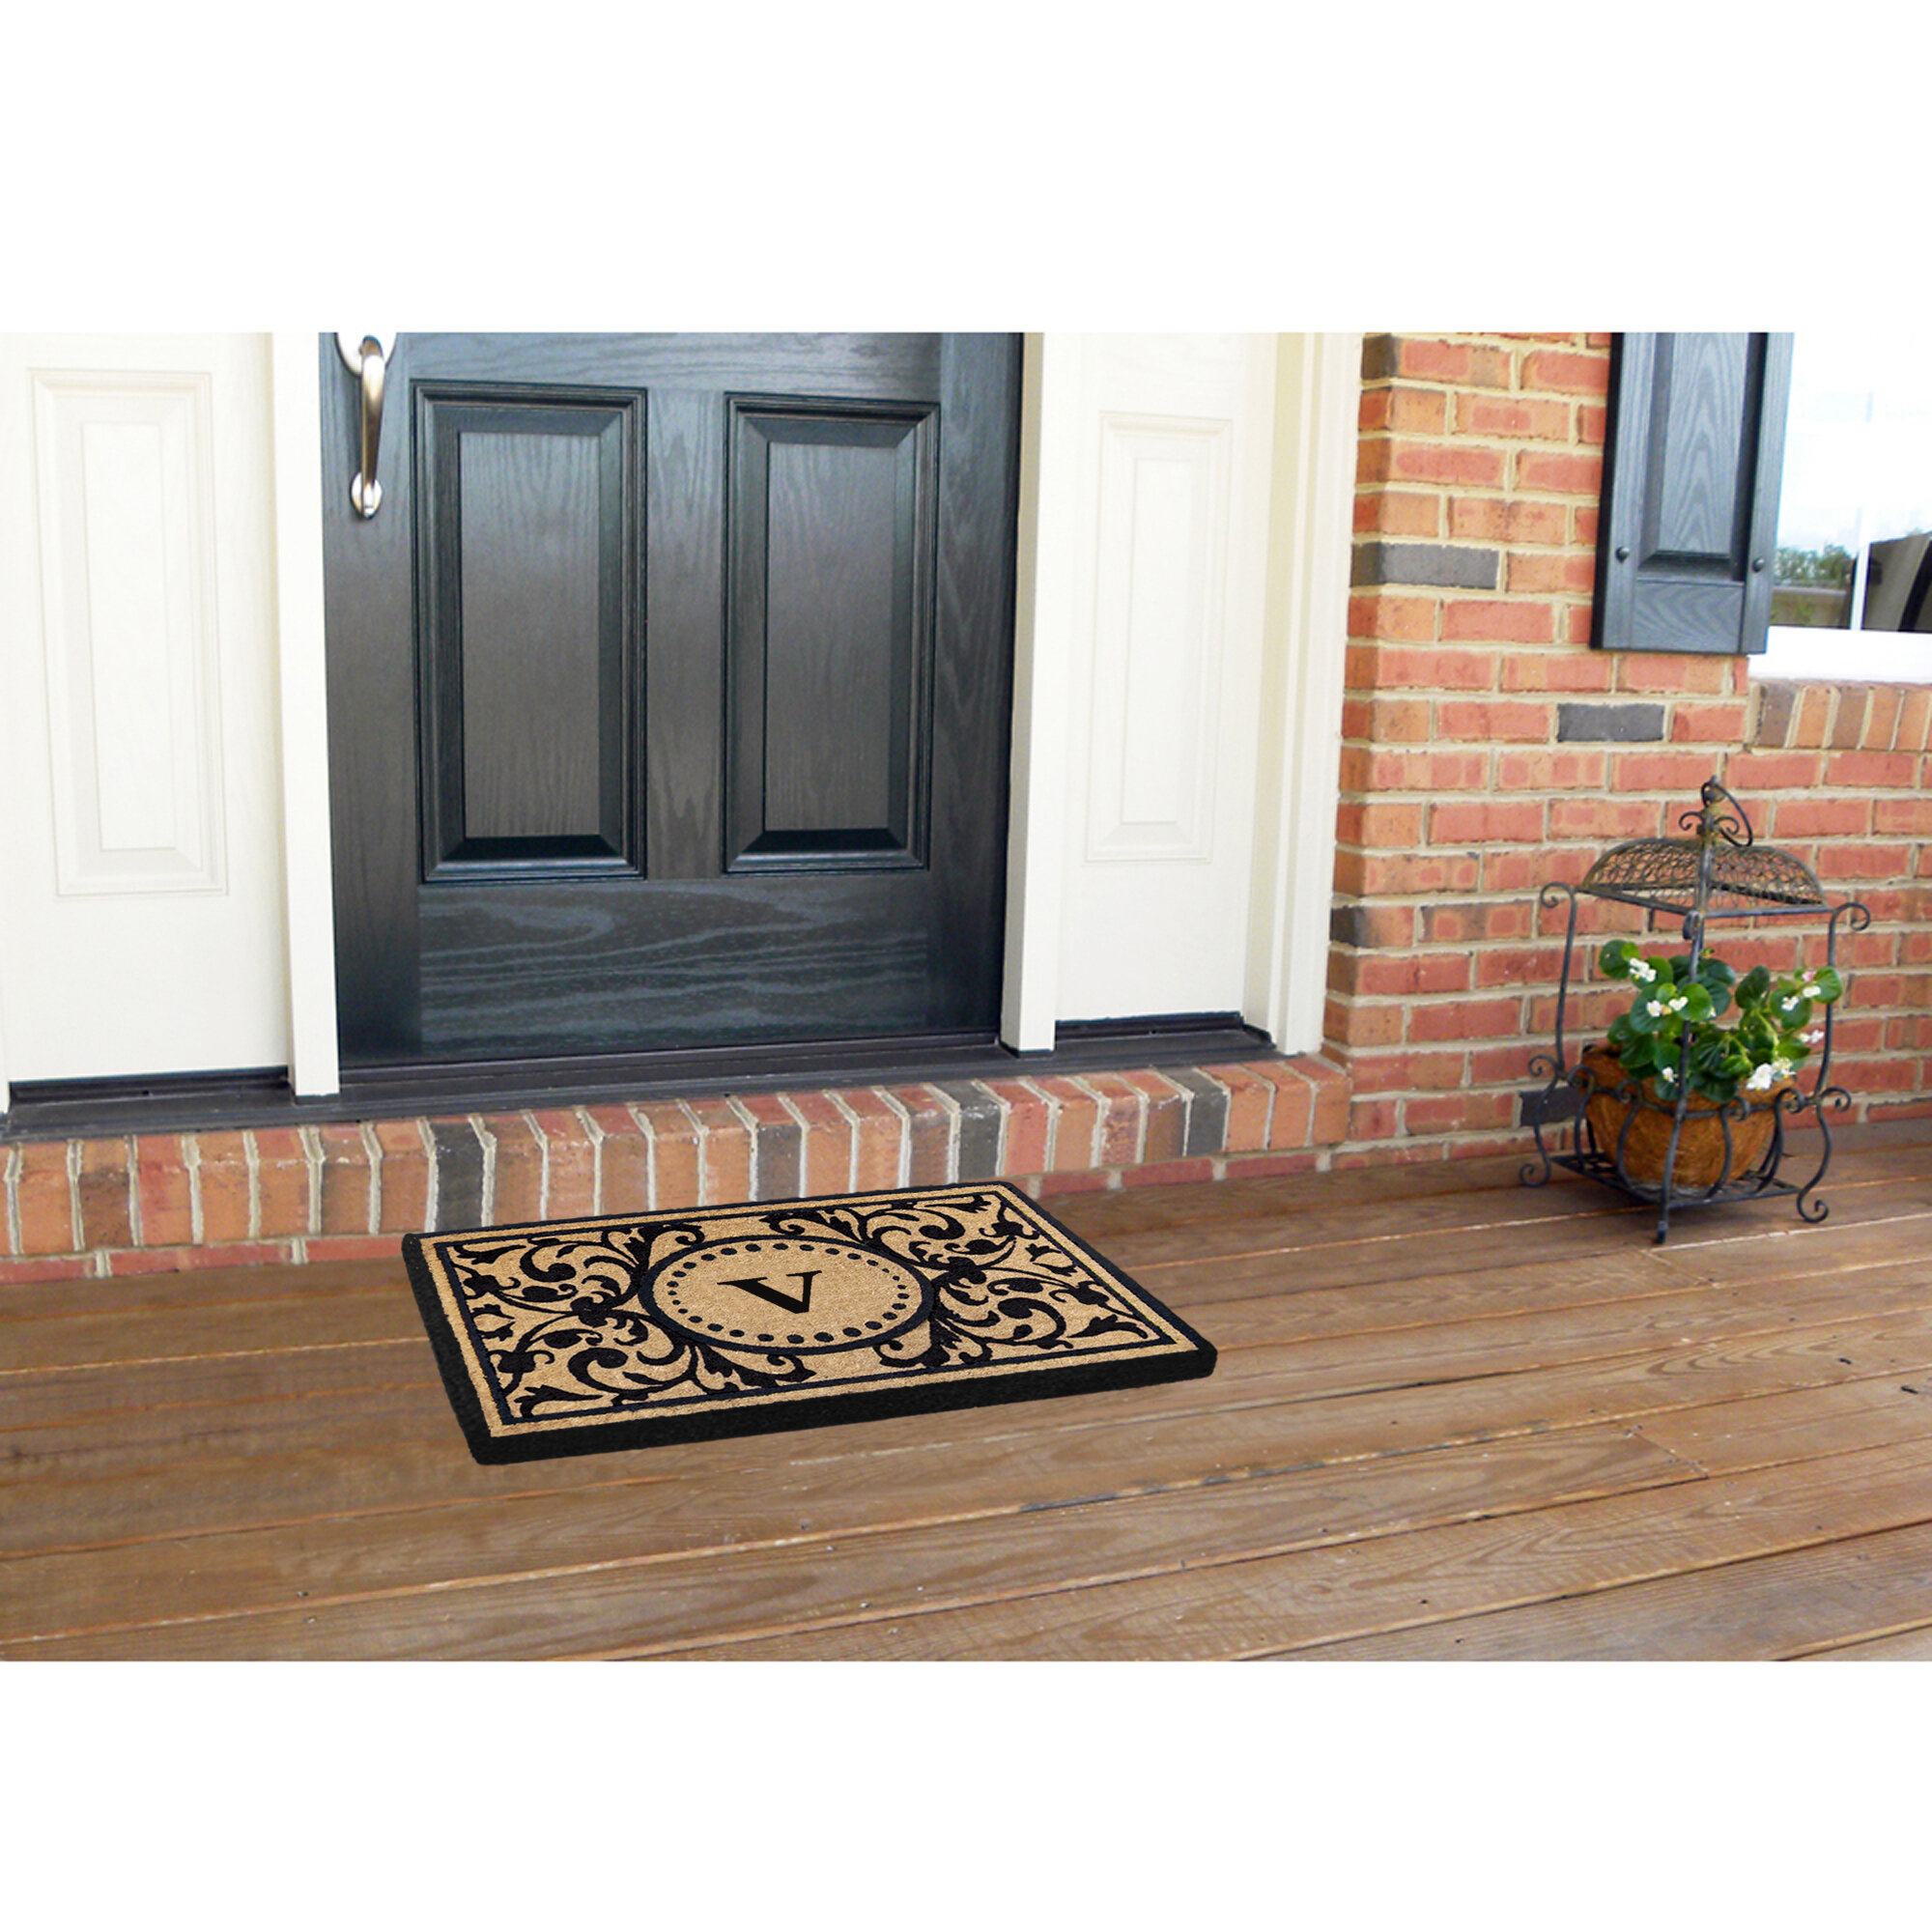 Alcott Hill® Osborne Non-Slip Floral Outdoor Doormat & Reviews | Wayfair